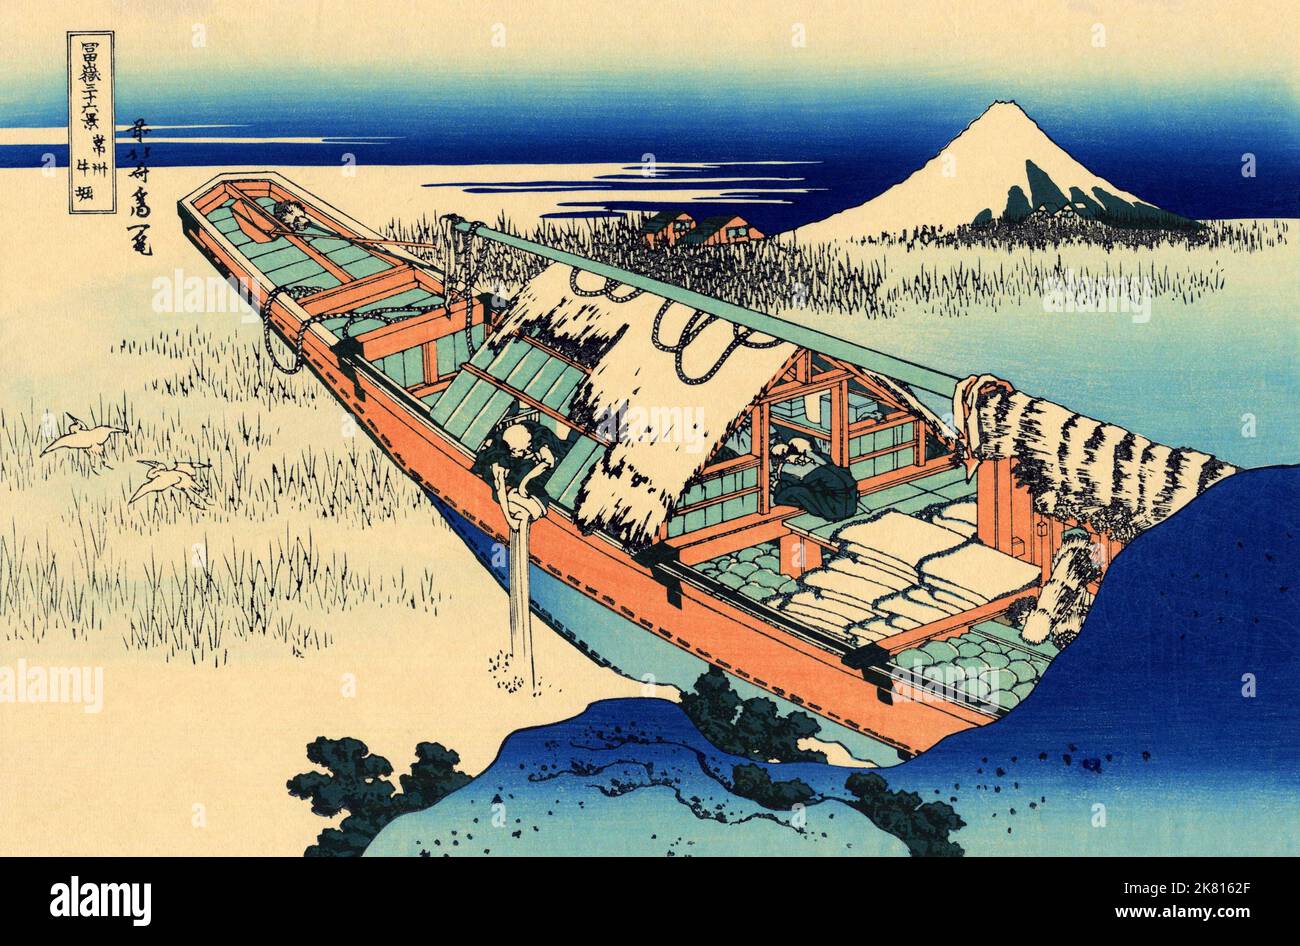 Giappone: «Ushibori nella provincia di Hitachi». Ukiyo-e stampa in blocco della serie «trentasei viste del Monte Fuji» di Katsushika Hokusai (31 ottobre 1760 - 10 maggio 1849), c.. 1830. «36 viste del Monte Fuji» è una serie di grandi stampe a blocchi di legno realizzate dall’artista Katsushika Hokusai. La serie raffigura il Monte Fuji in stagioni e condizioni meteorologiche diverse da una varietà di luoghi e distanze. Si compone di 46 stampe create tra il 1826 e il 1833. I primi 36 sono stati inclusi nella pubblicazione originale e, a causa della loro popolarità, altri 10 sono stati aggiunti dopo la pubblicazione originale. Foto Stock